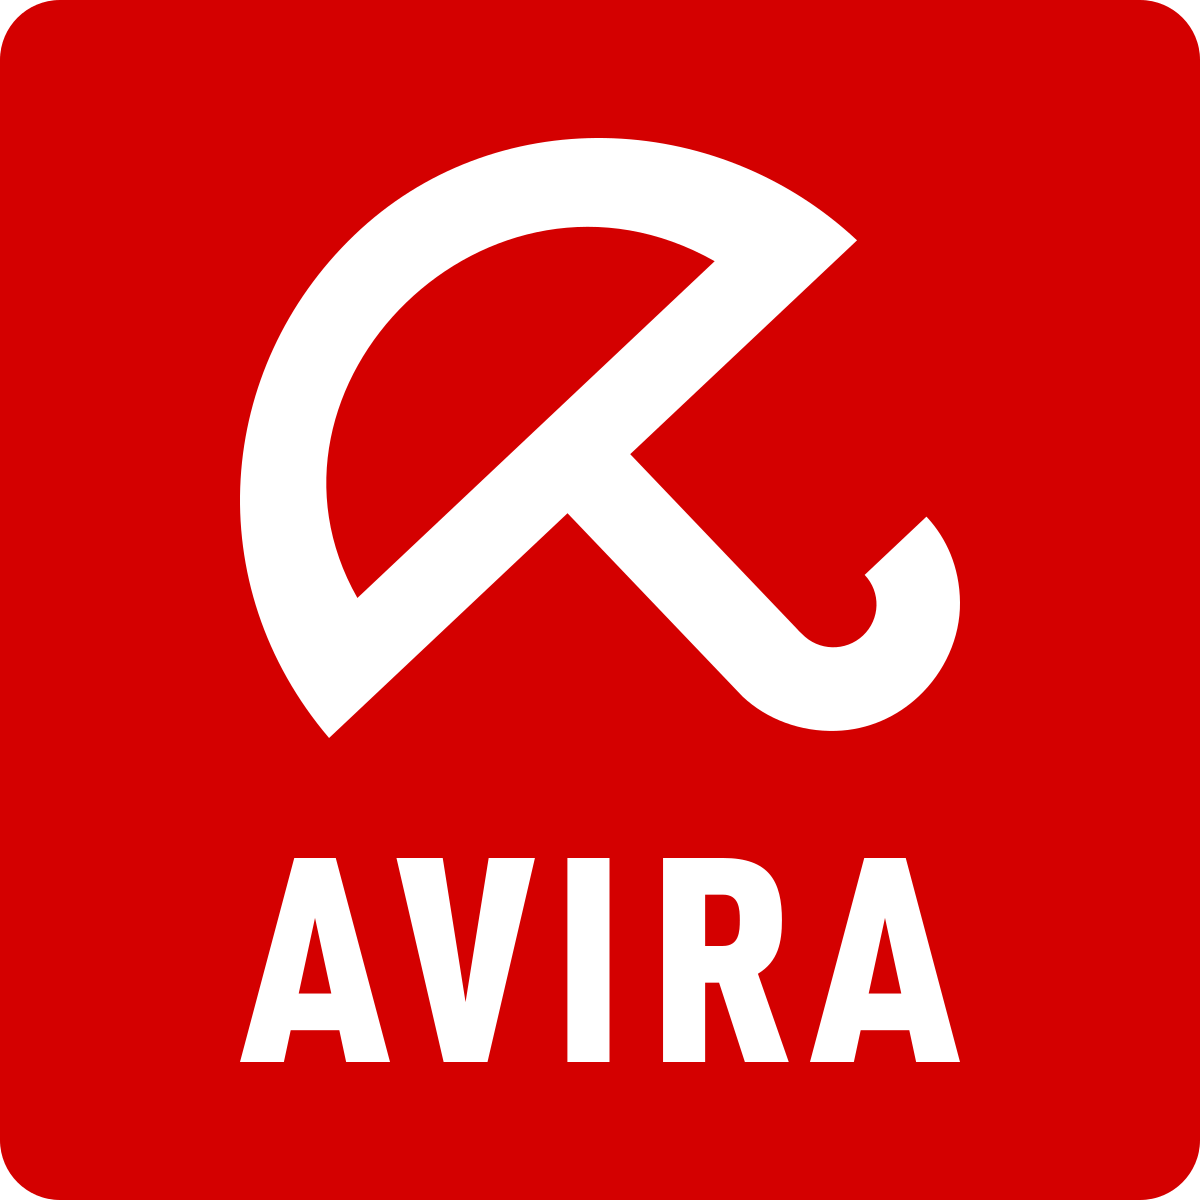 avira antivirus free download 2020